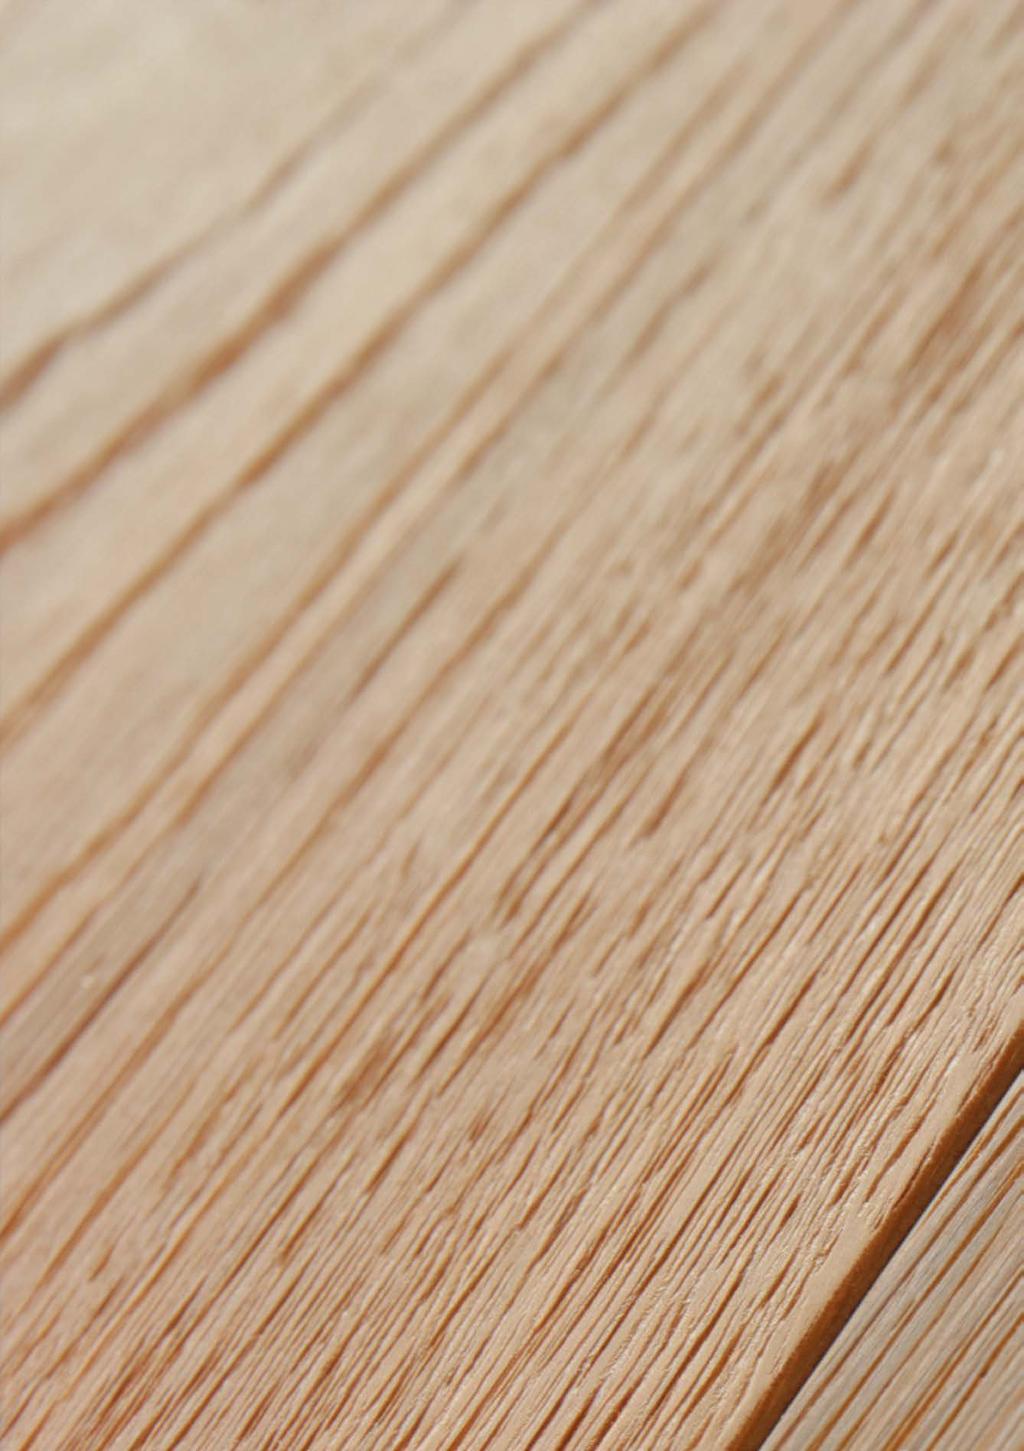 1 2 Matte lak Lindura houten vloer Matte lak laat het houtkarakter extra goed tot zijn recht komen. Het hout krijgt daardoor een warme, natuurlijke uitstraling.